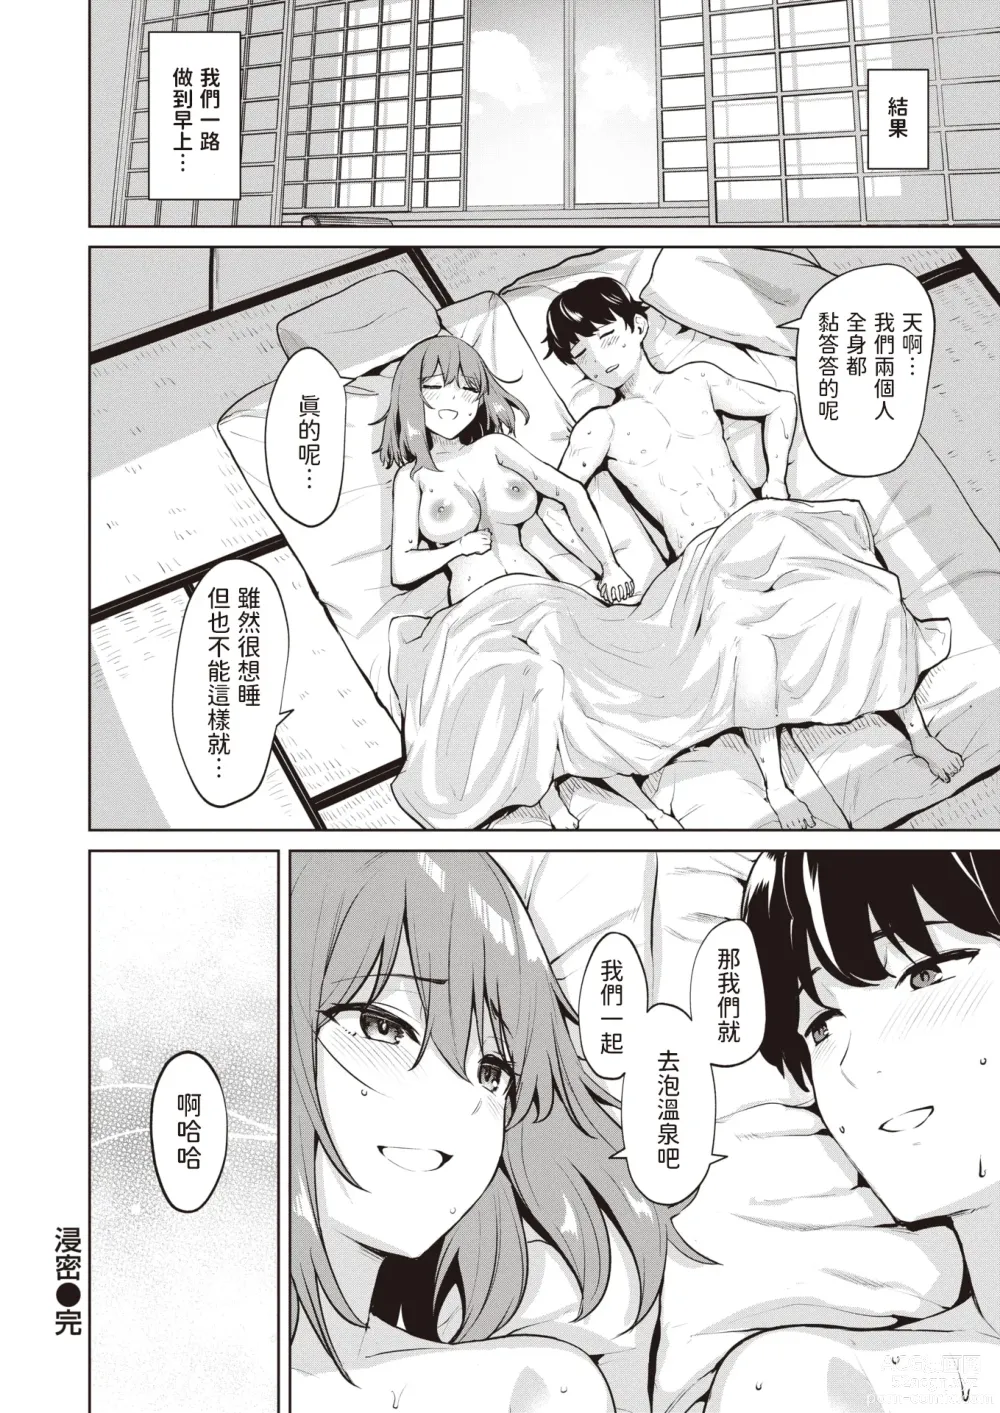 Page 24 of manga Shinmitsu